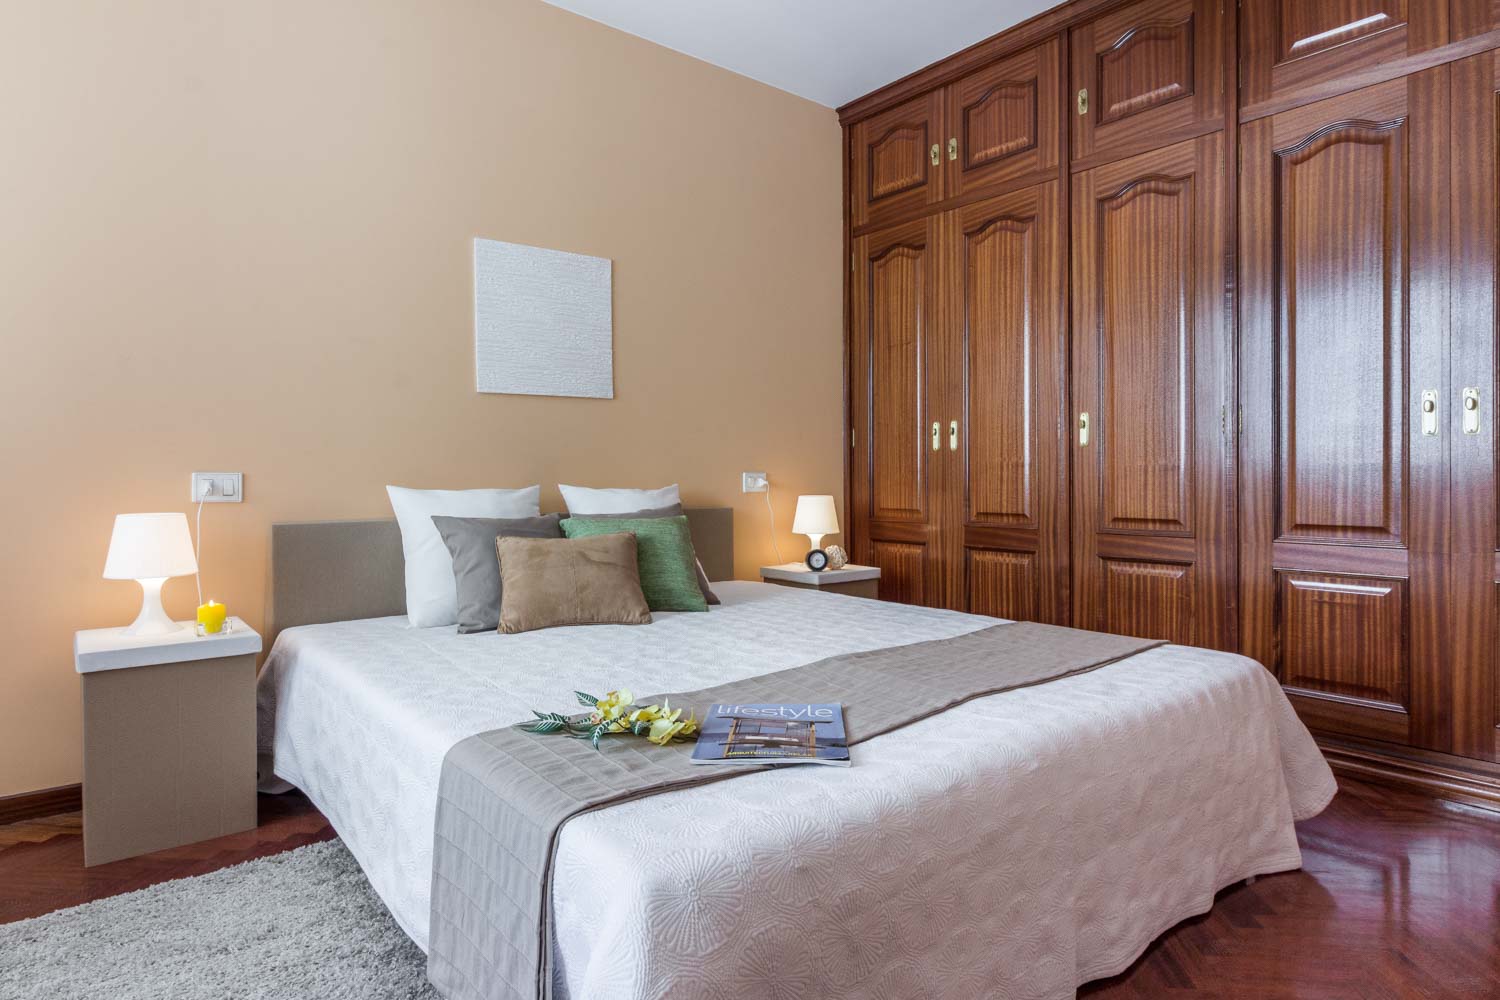 Dormitorio principal con home staging de cartón y textiles neutros_armario empotrado grande de madera